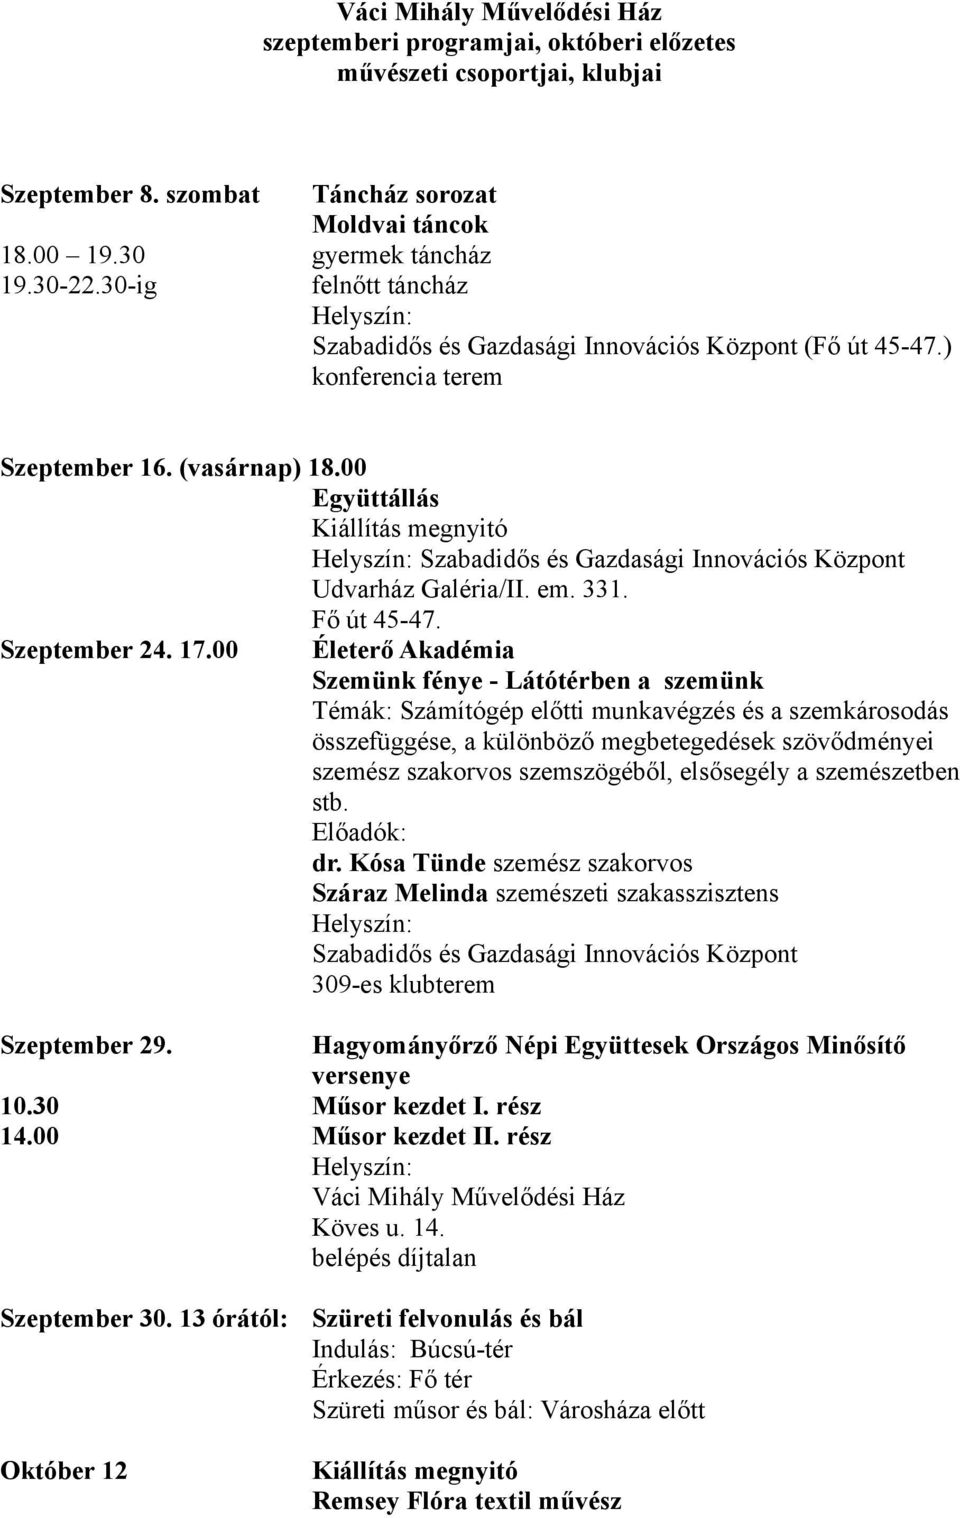 00 Együttállás Kiállítás megnyitó Helyszín: Szabadidős és Gazdasági Innovációs Központ Udvarház Galéria/II. em. 331. Fő út 45-47. Szeptember 24. 17.